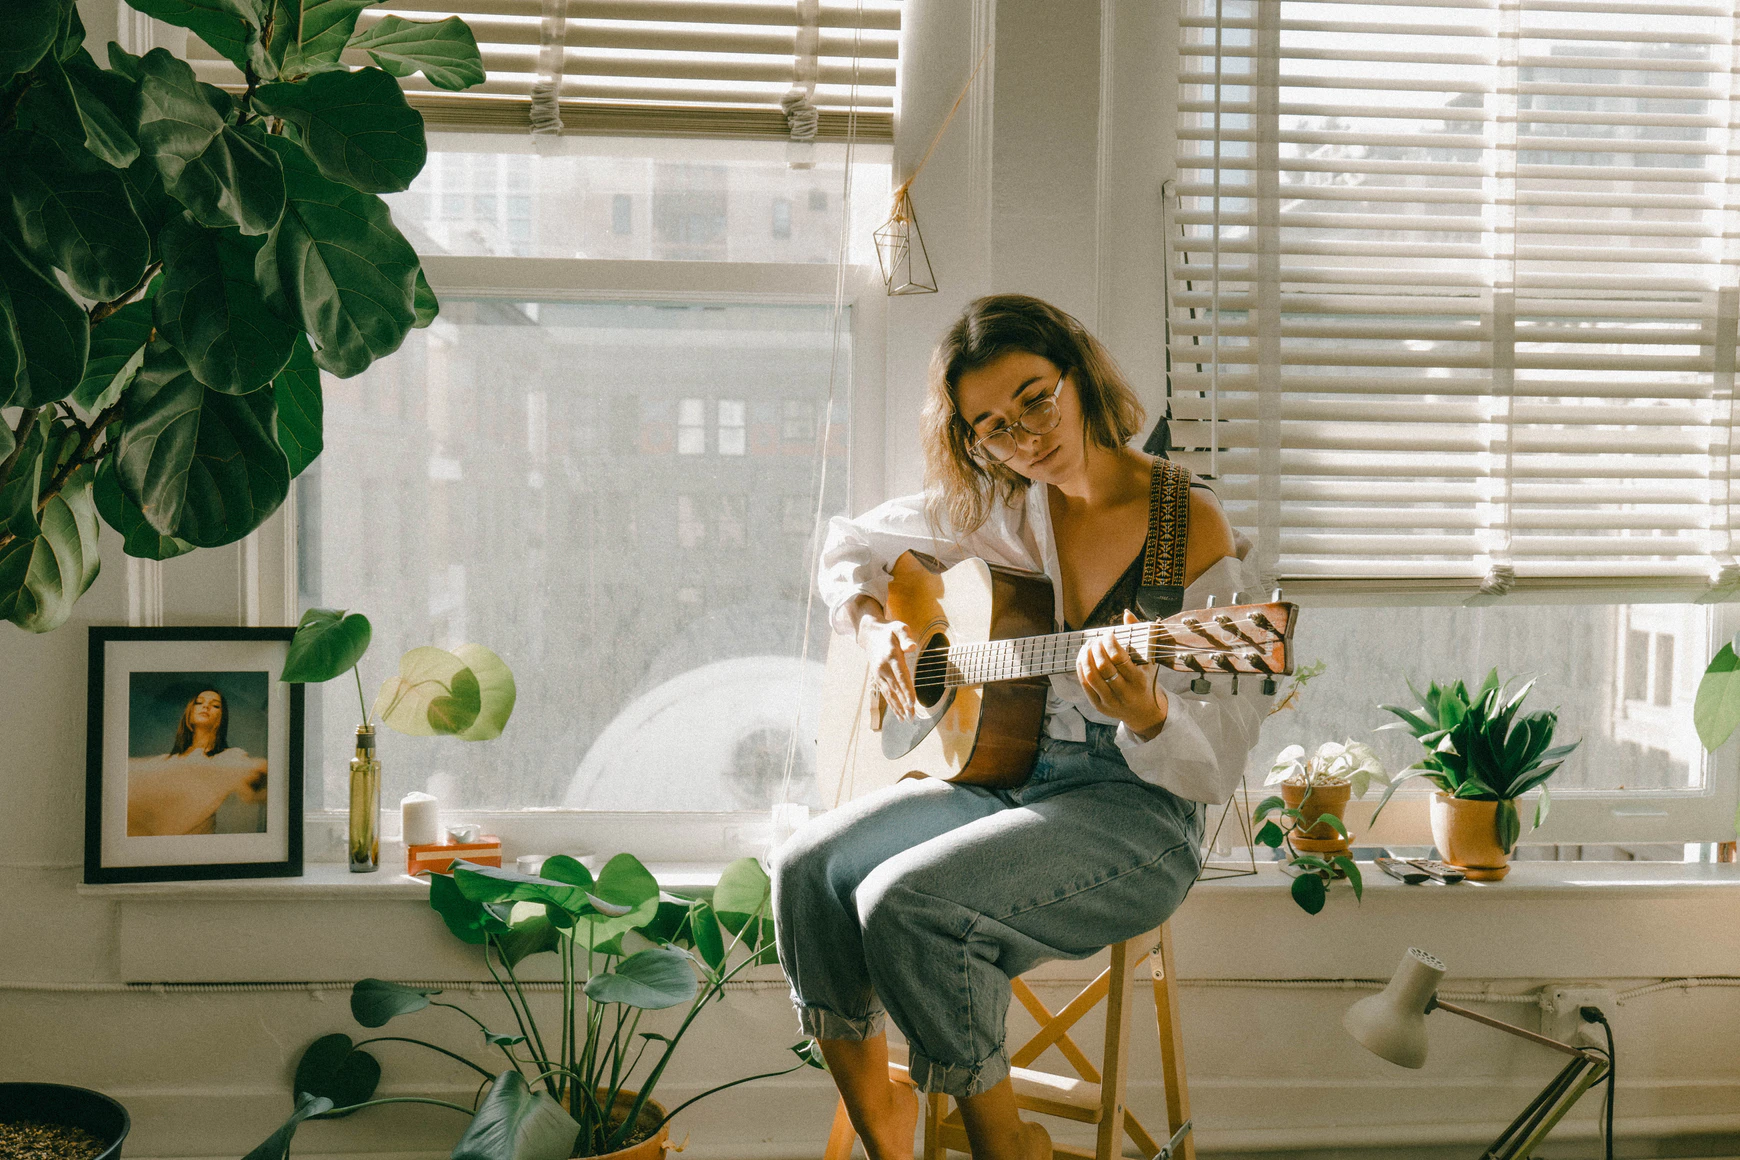 Girl playing guitar in window